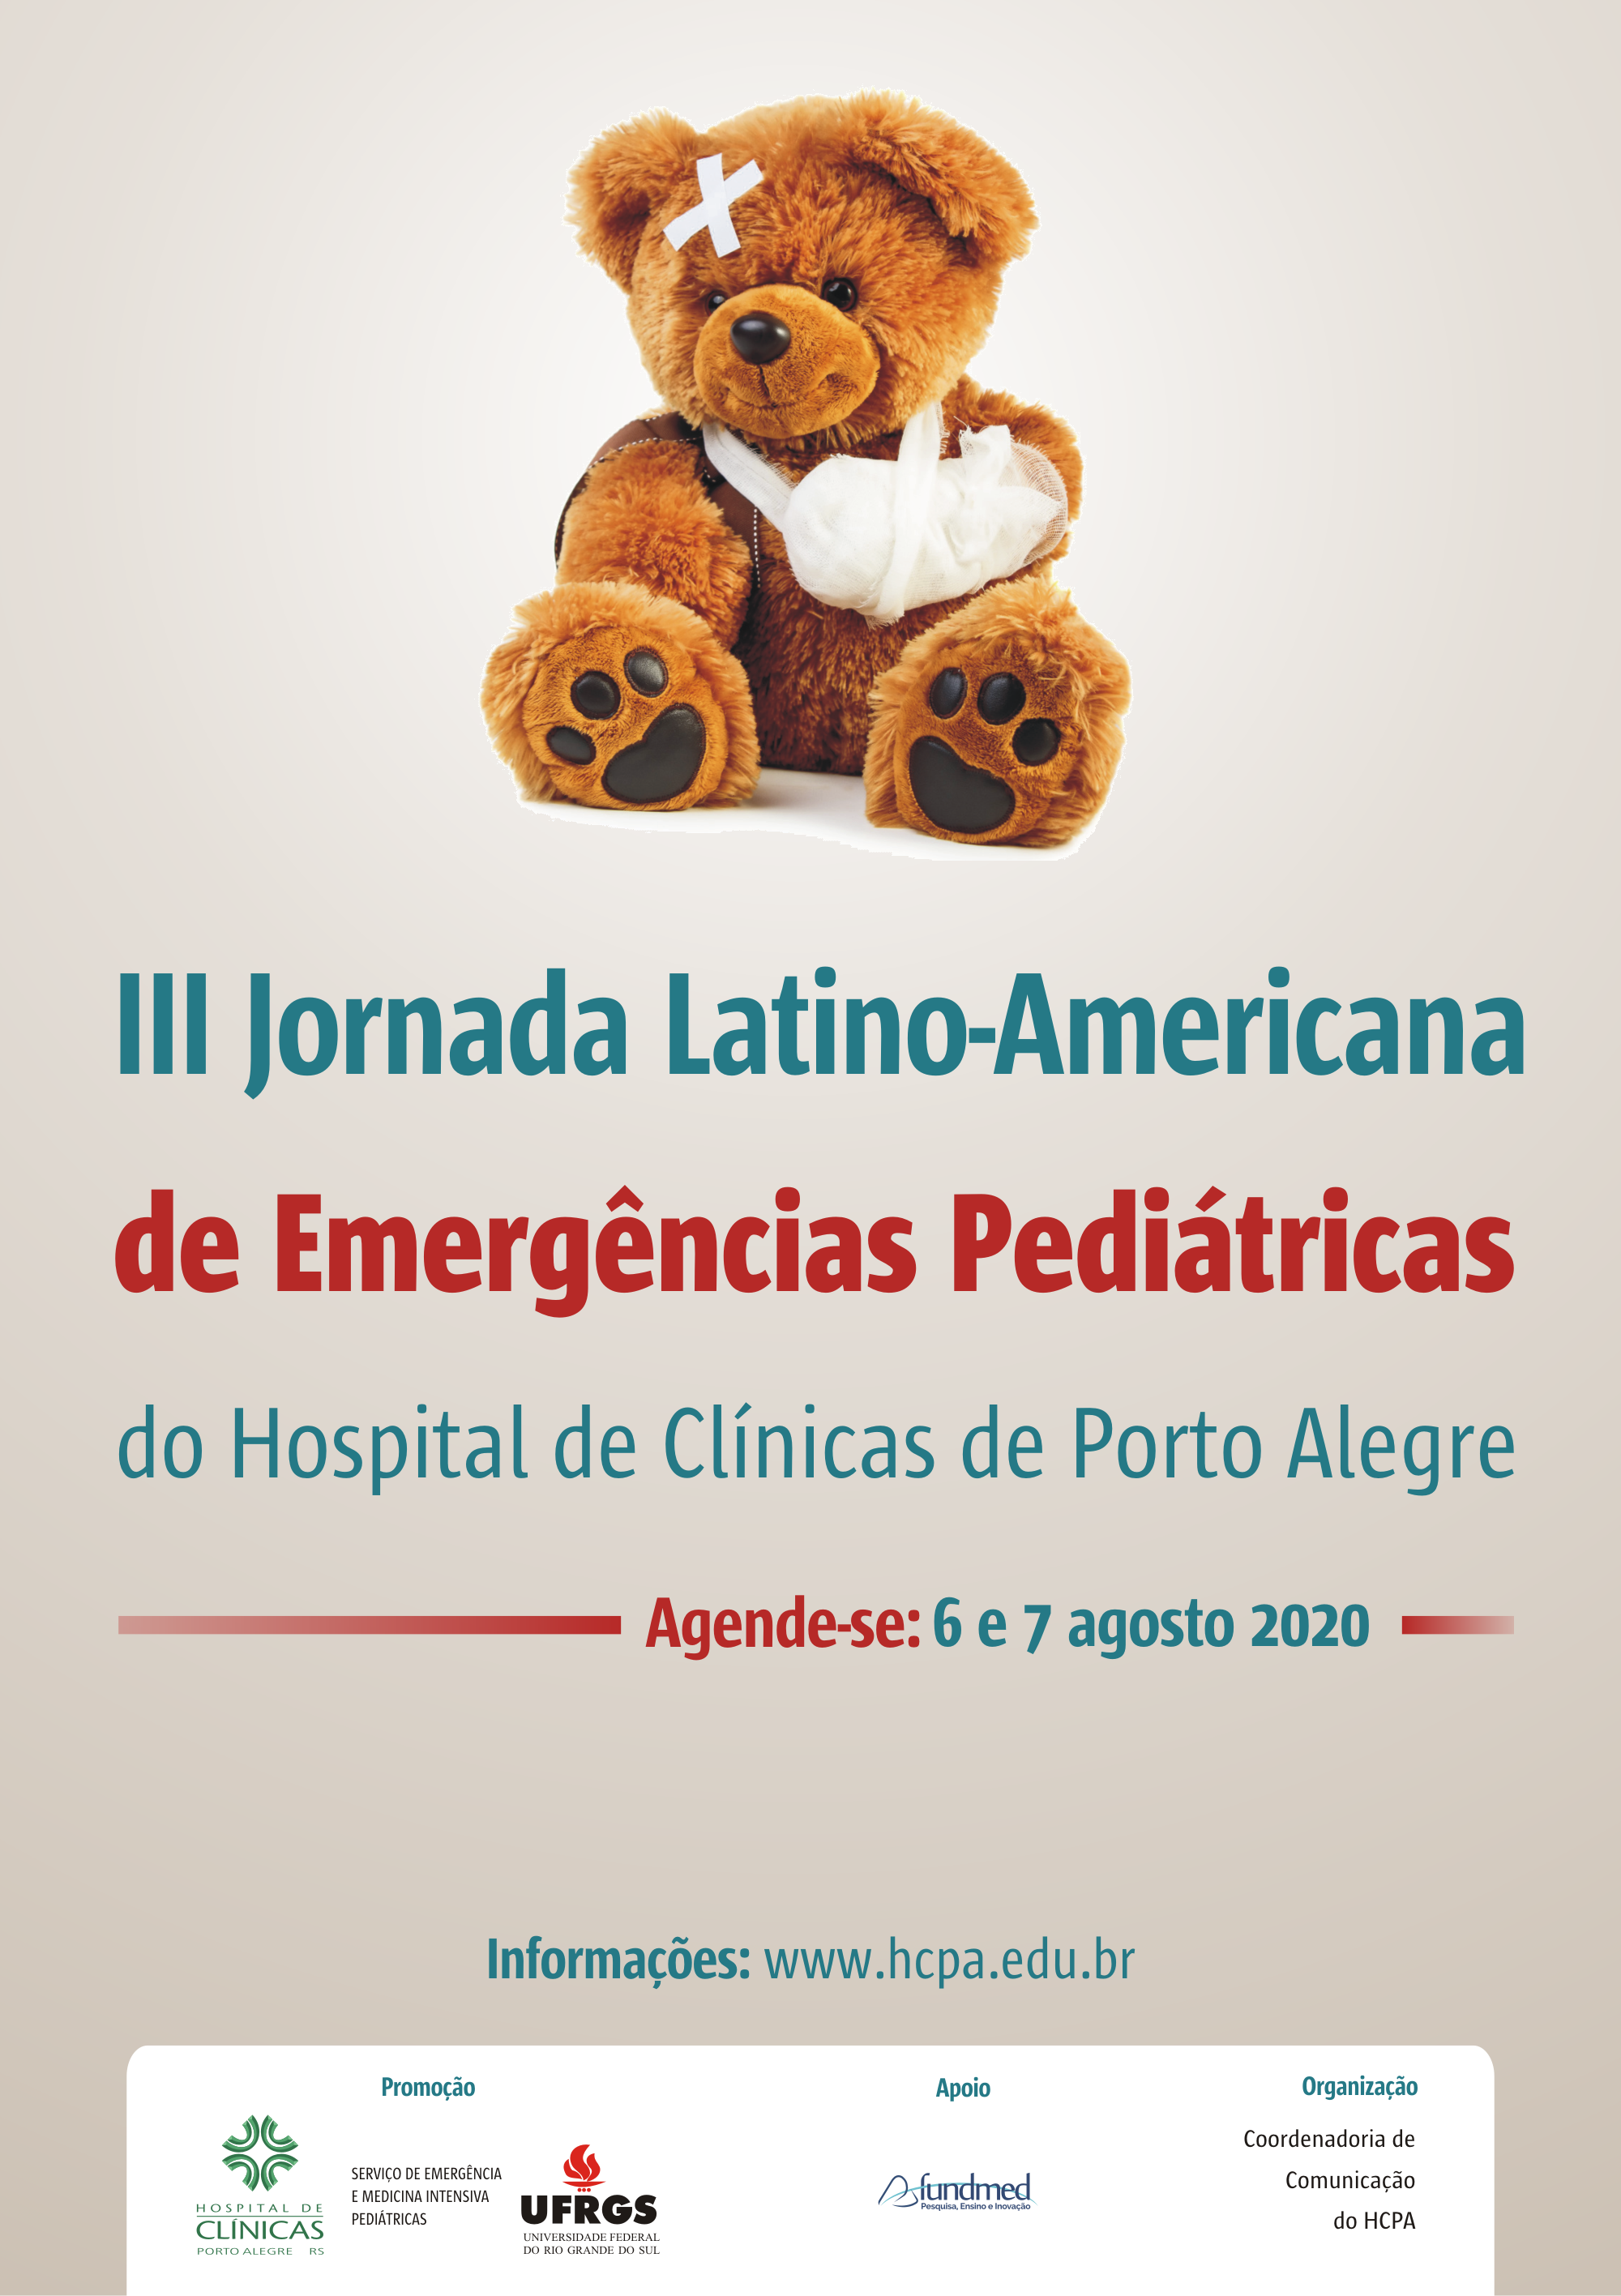 jornada emergencia pediatrica save the date 2